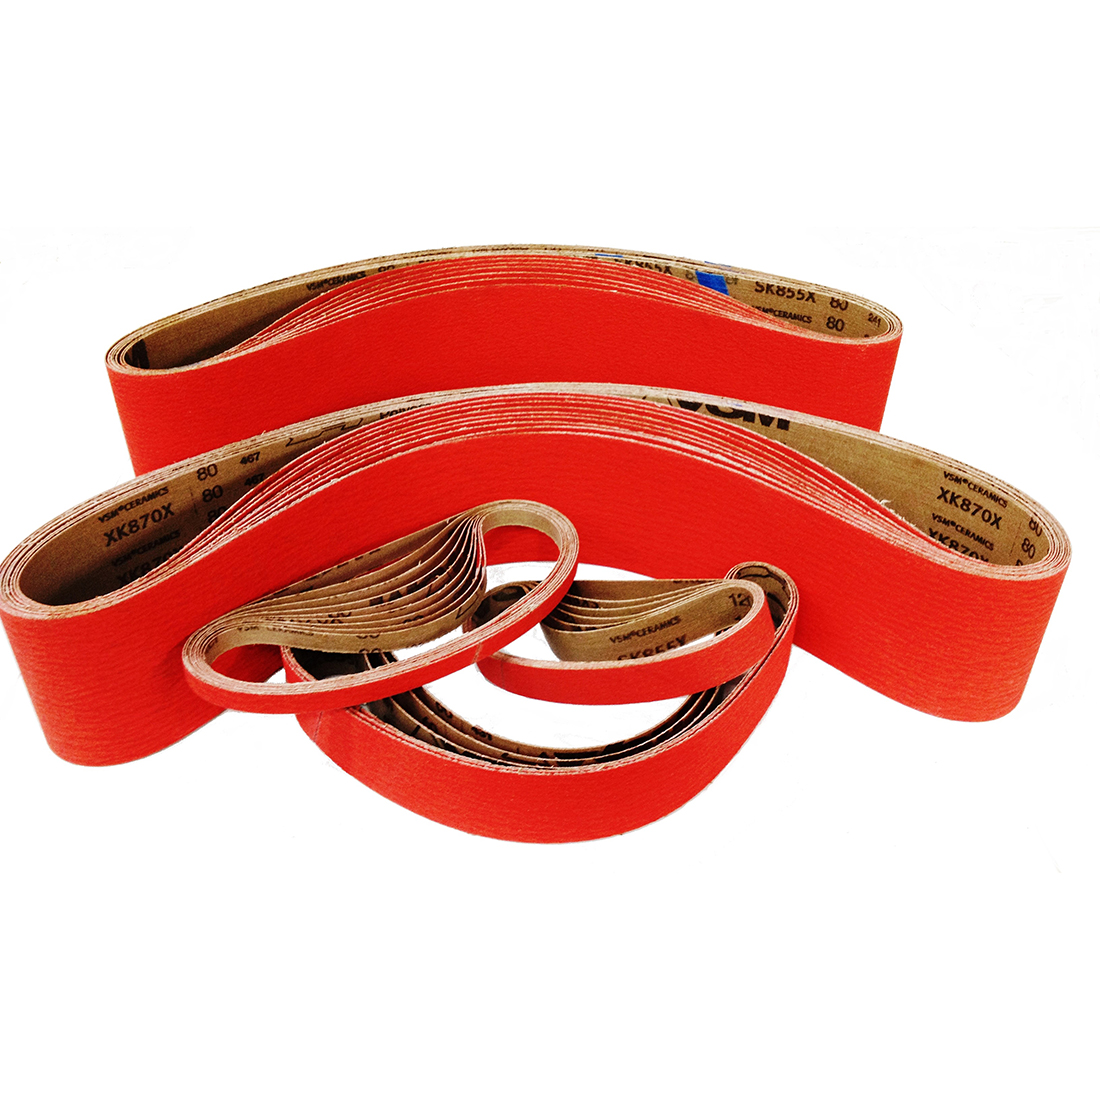 60 Grit VSM Abrasive Belt Bright Red Cloth Backing Pack of 10 Ceramic 48 Length 6 Width 